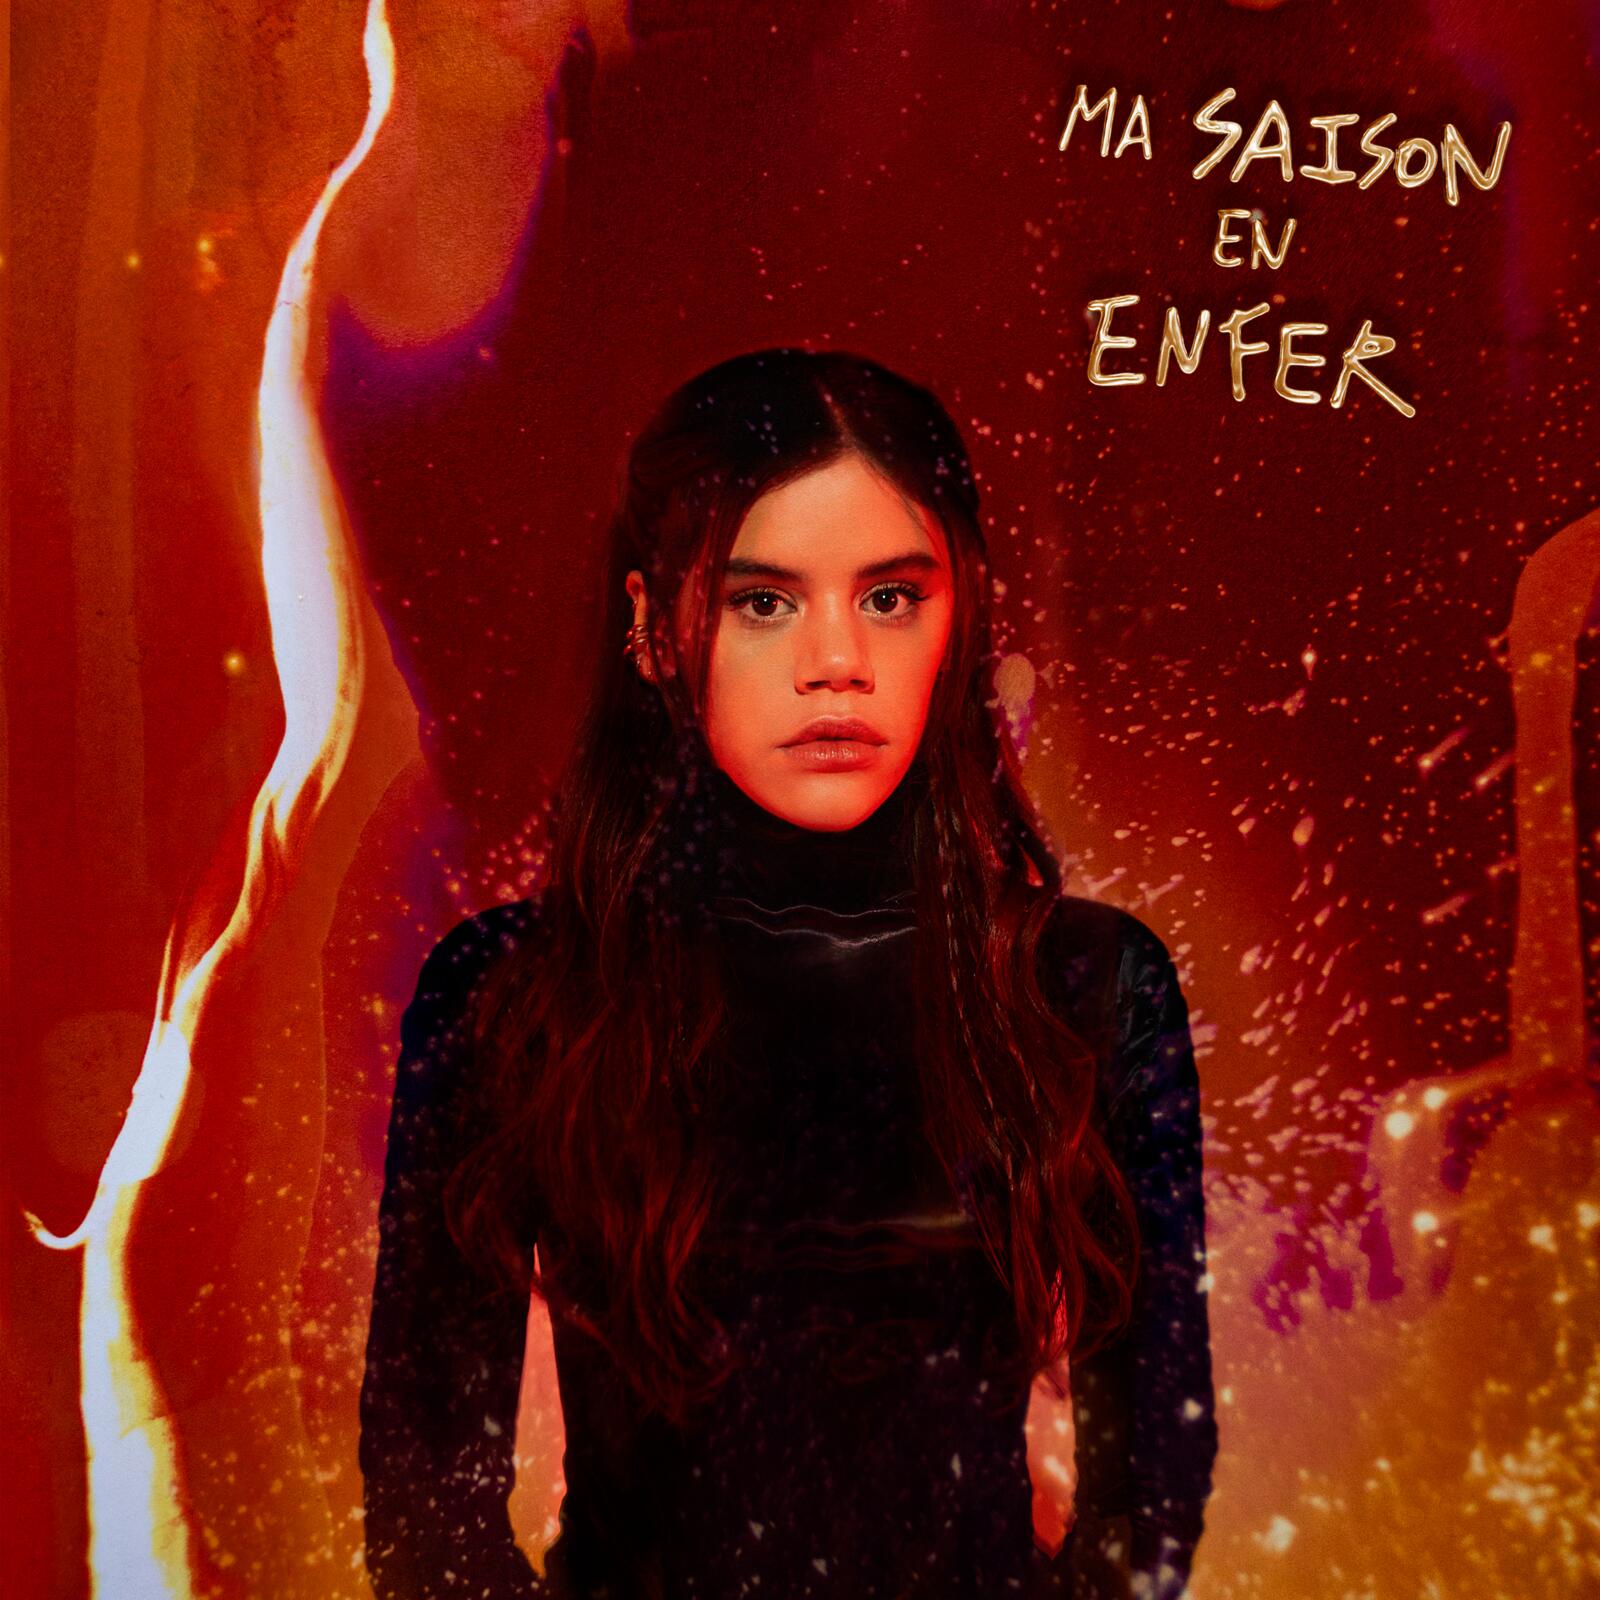 Couverture du nouvel EP de Rori "Ma saison en enfer". La chanteuse regarde fixement l'appareil entouré d'un décor de flamme.